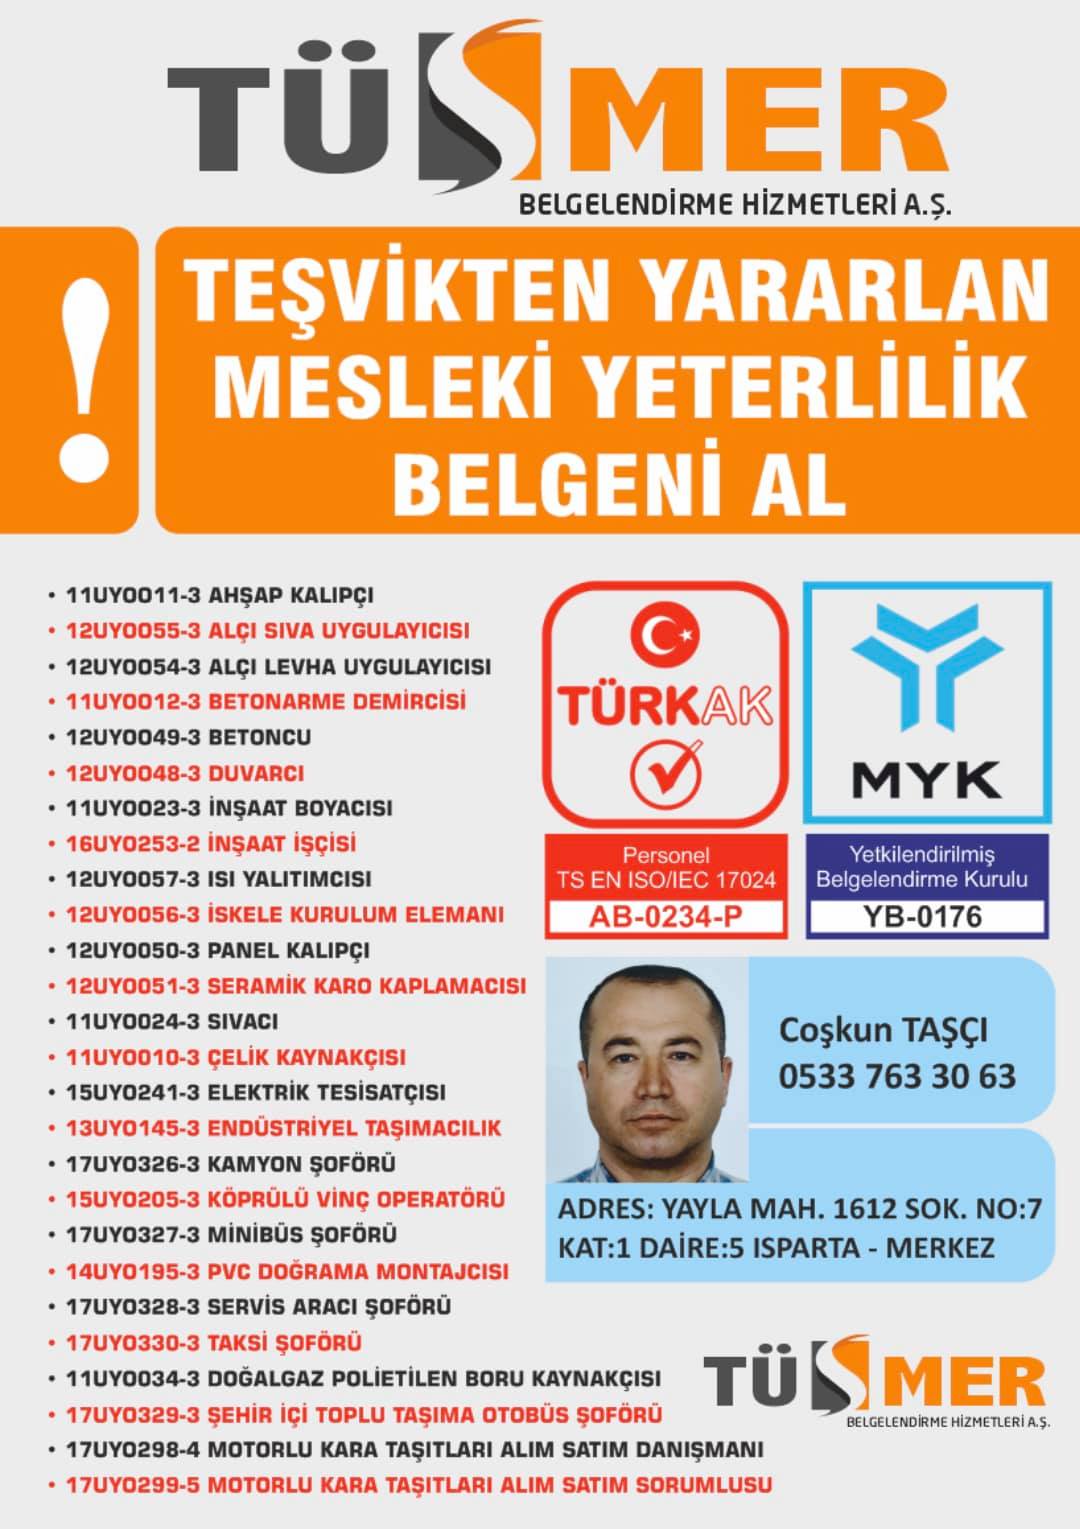 MYK MESLEKİ YETERLİLİK BELGESİ Kemankeş Kara Mustafa PaşaBeyoğlu İstanbul